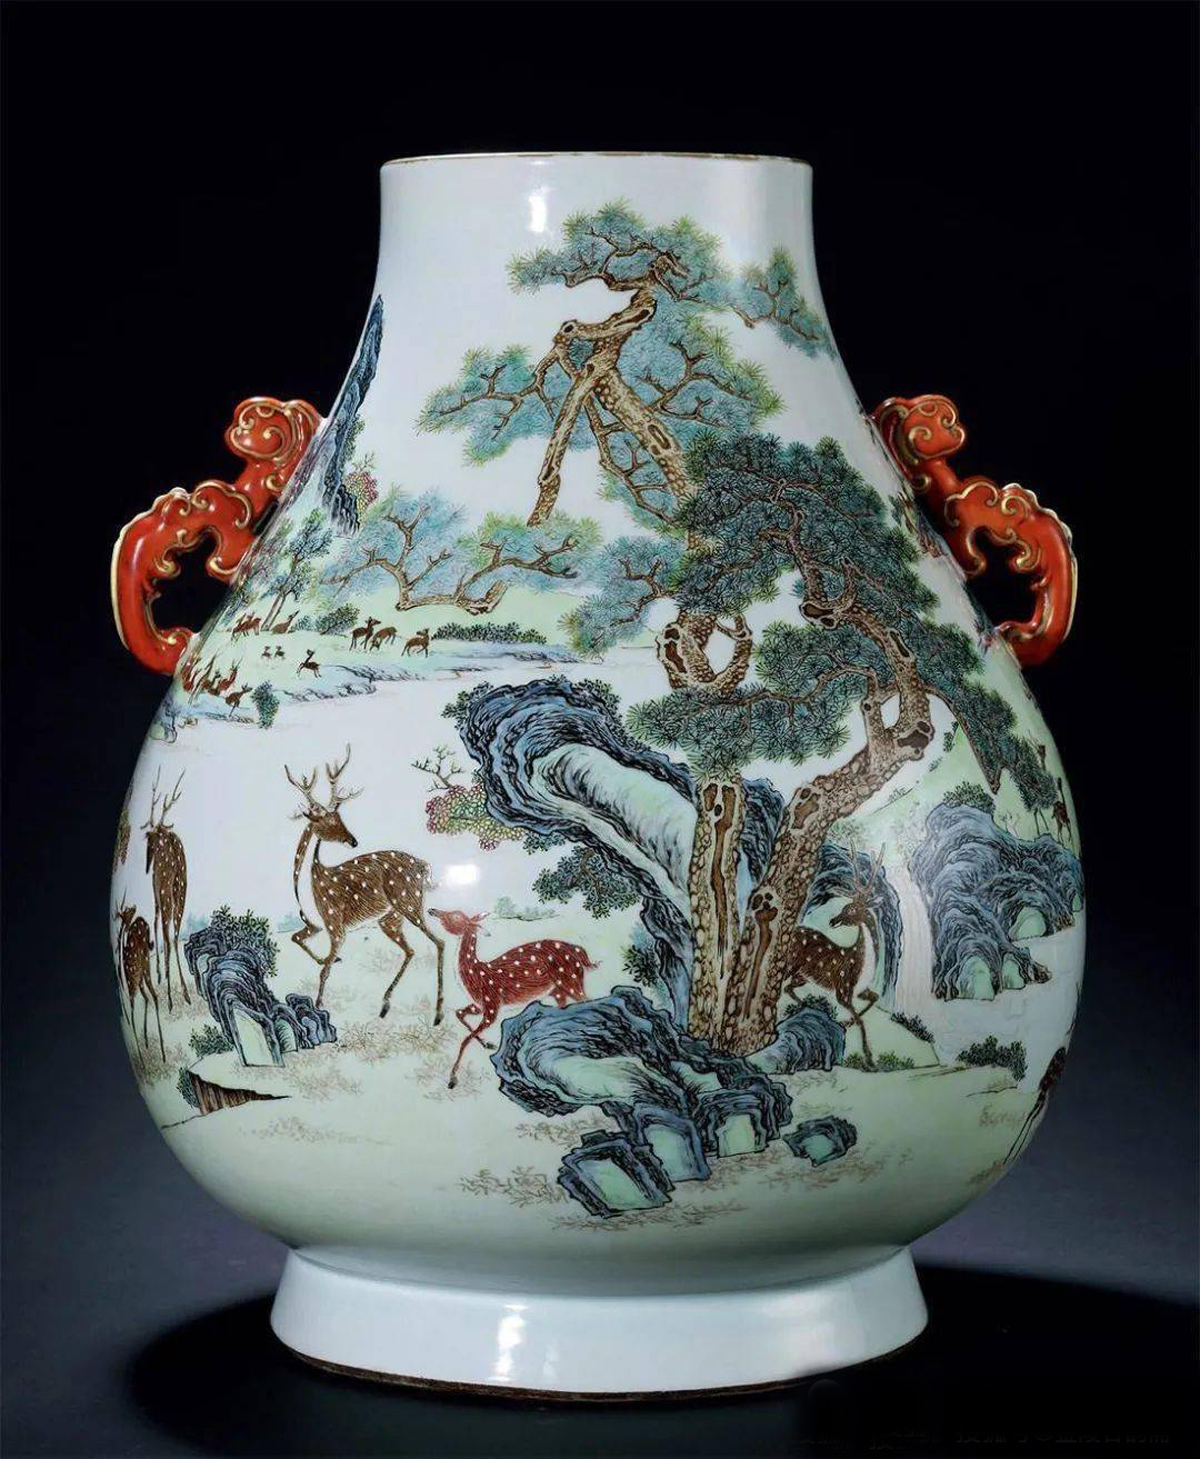 领略中国四大名瓷之一的粉彩统说和走马观花-说品